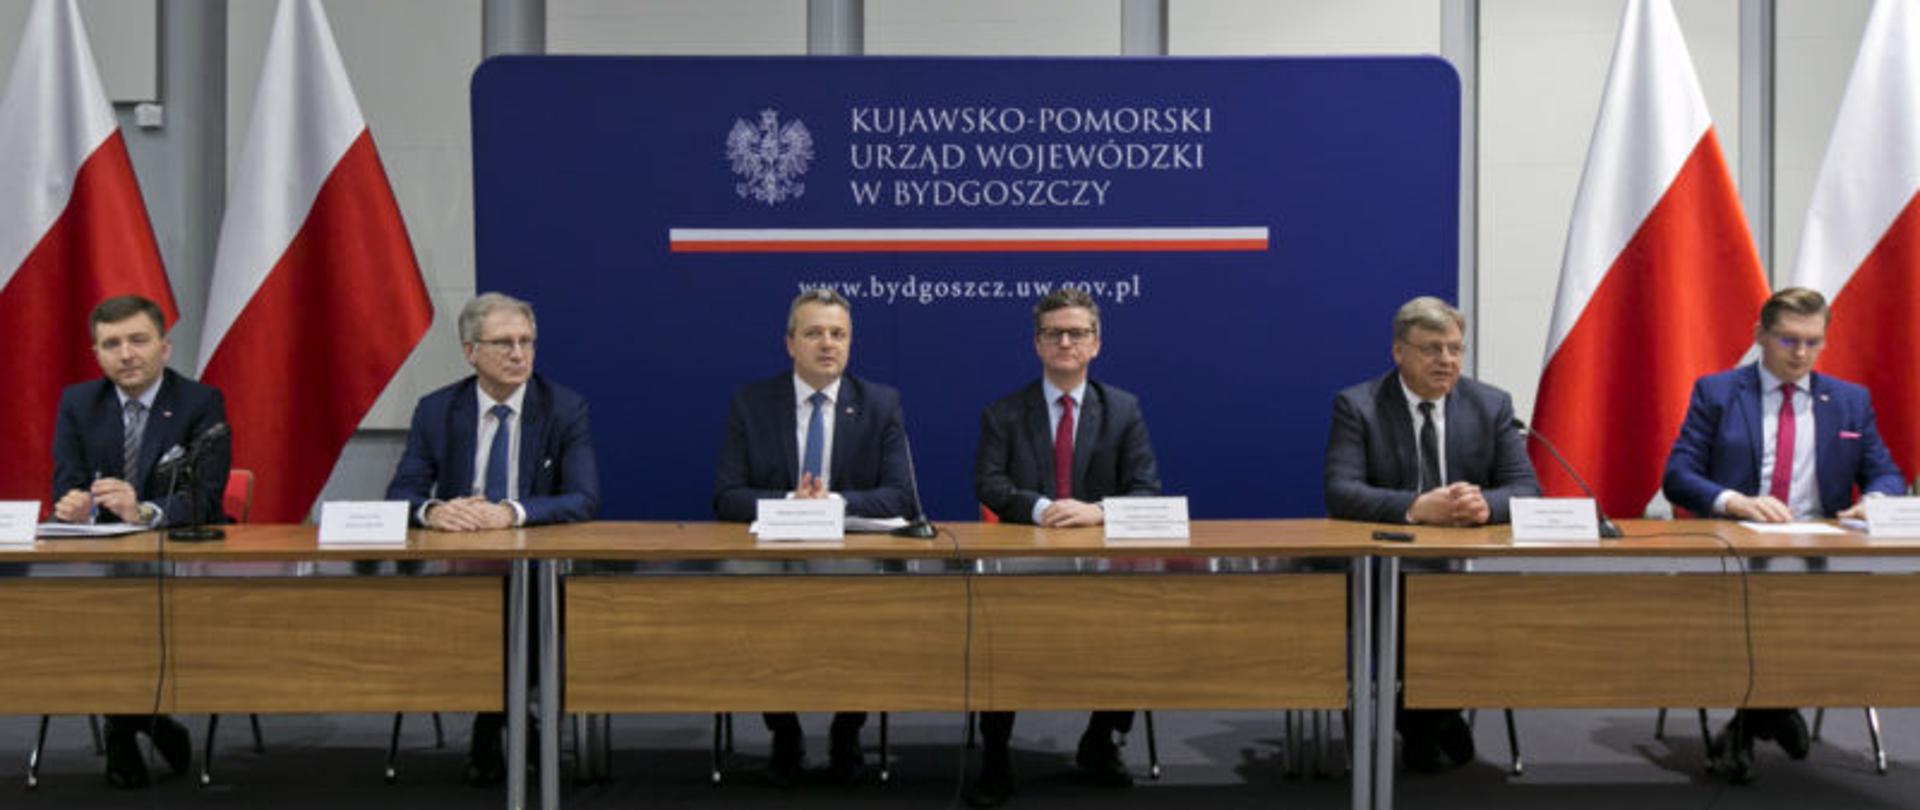 Na zdjęciu uczestnicy spotkania siedzą przy stole prezydialnym. W tle granatowa ścianka z napisem "Kujawsko-pomorski Urząd Wojewódzki w Bydgoszczy.